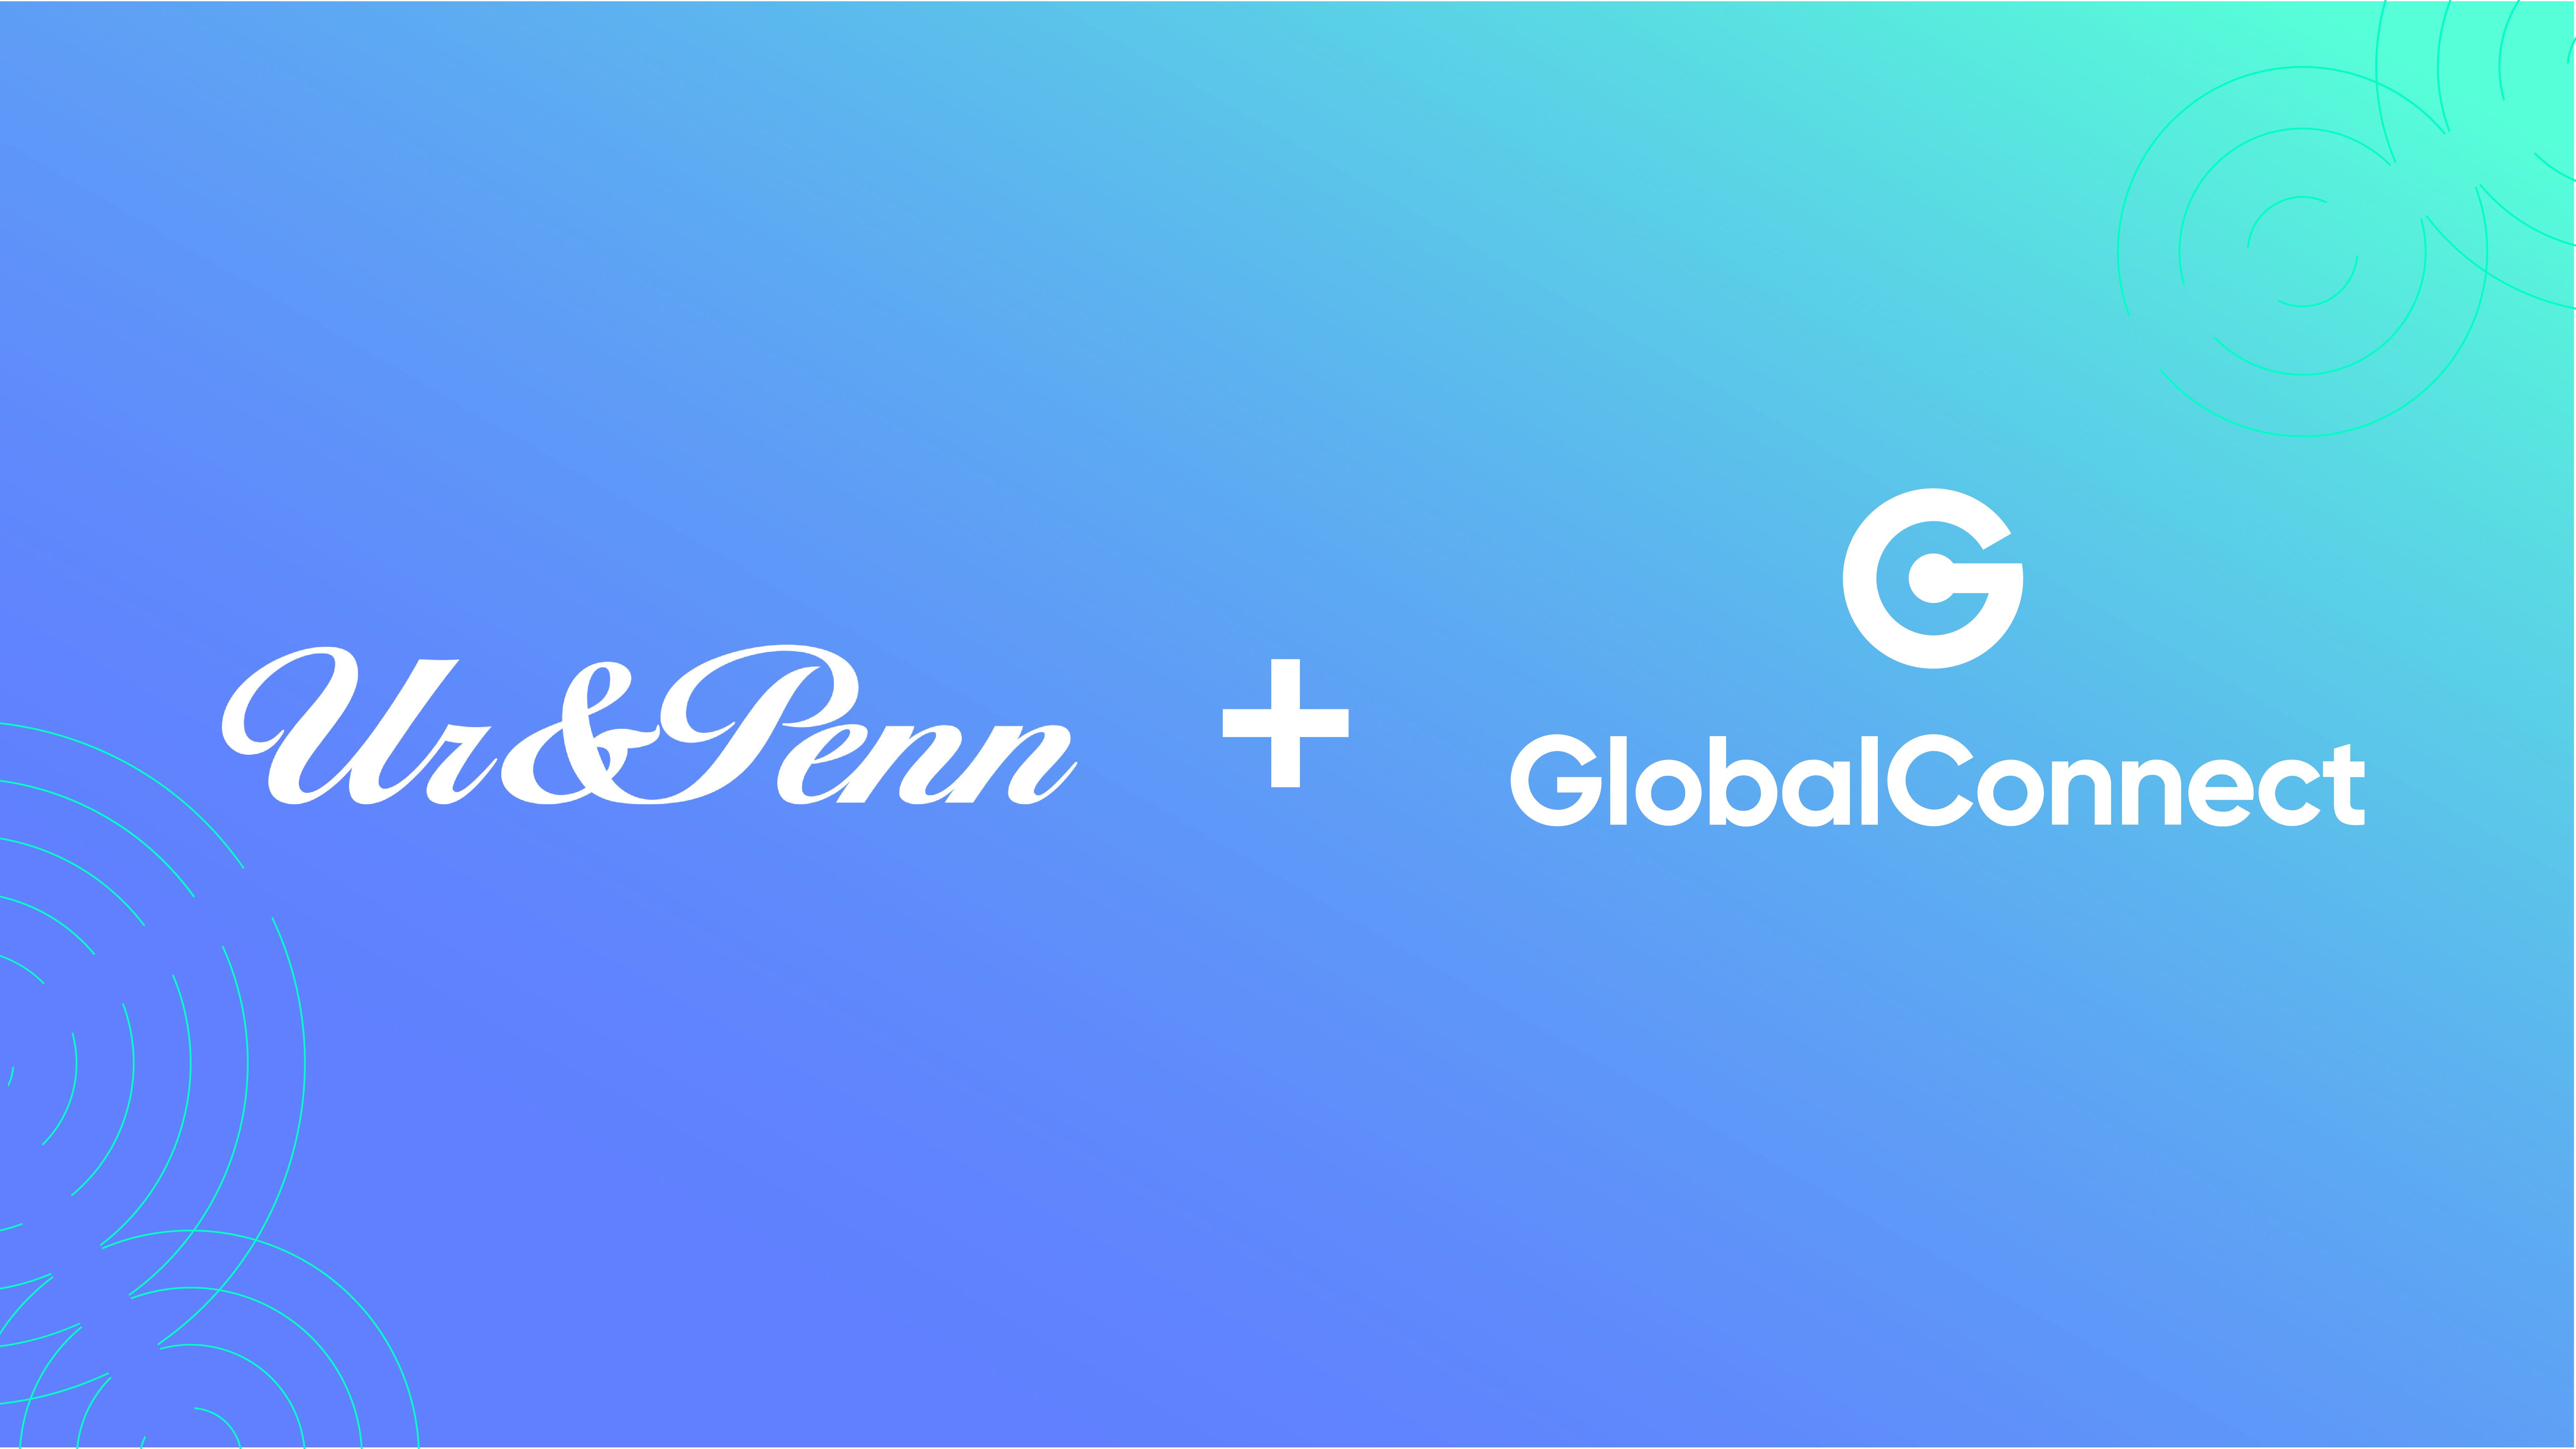 Ur&Penn väljer GlobalConnect när man utvecklar IT-infrastrukturen för över 120 butiker i Sverige och Finland